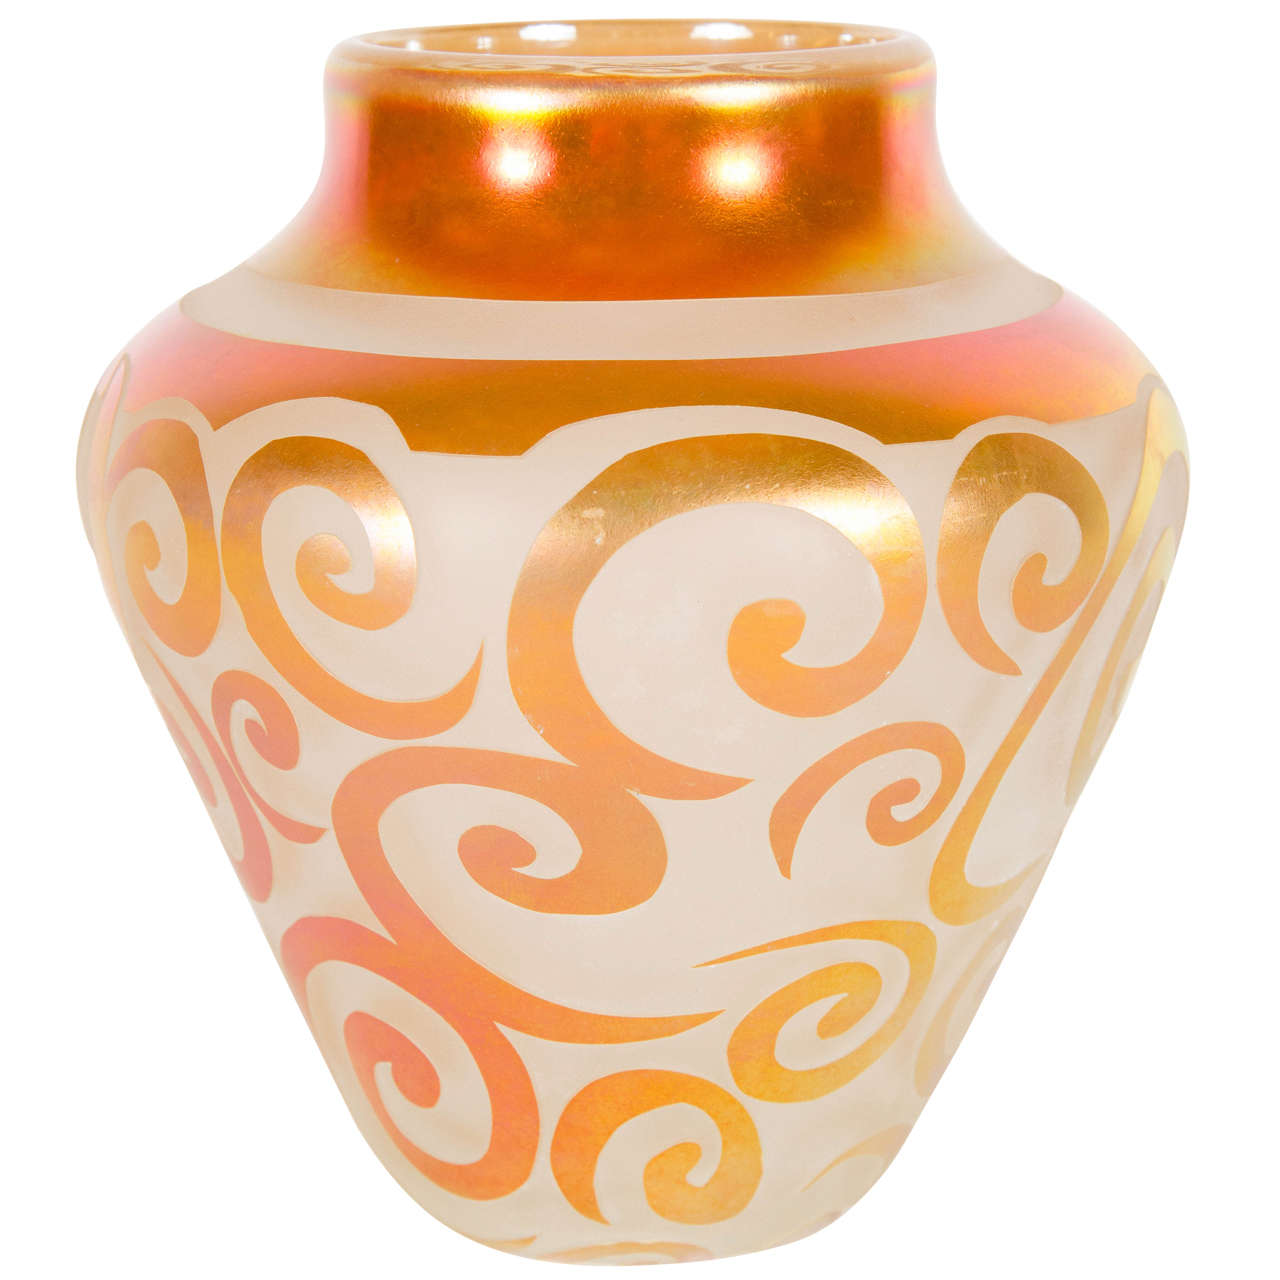 Exquisite Copper Iridescent hand Blown Relief Art Glass Vase